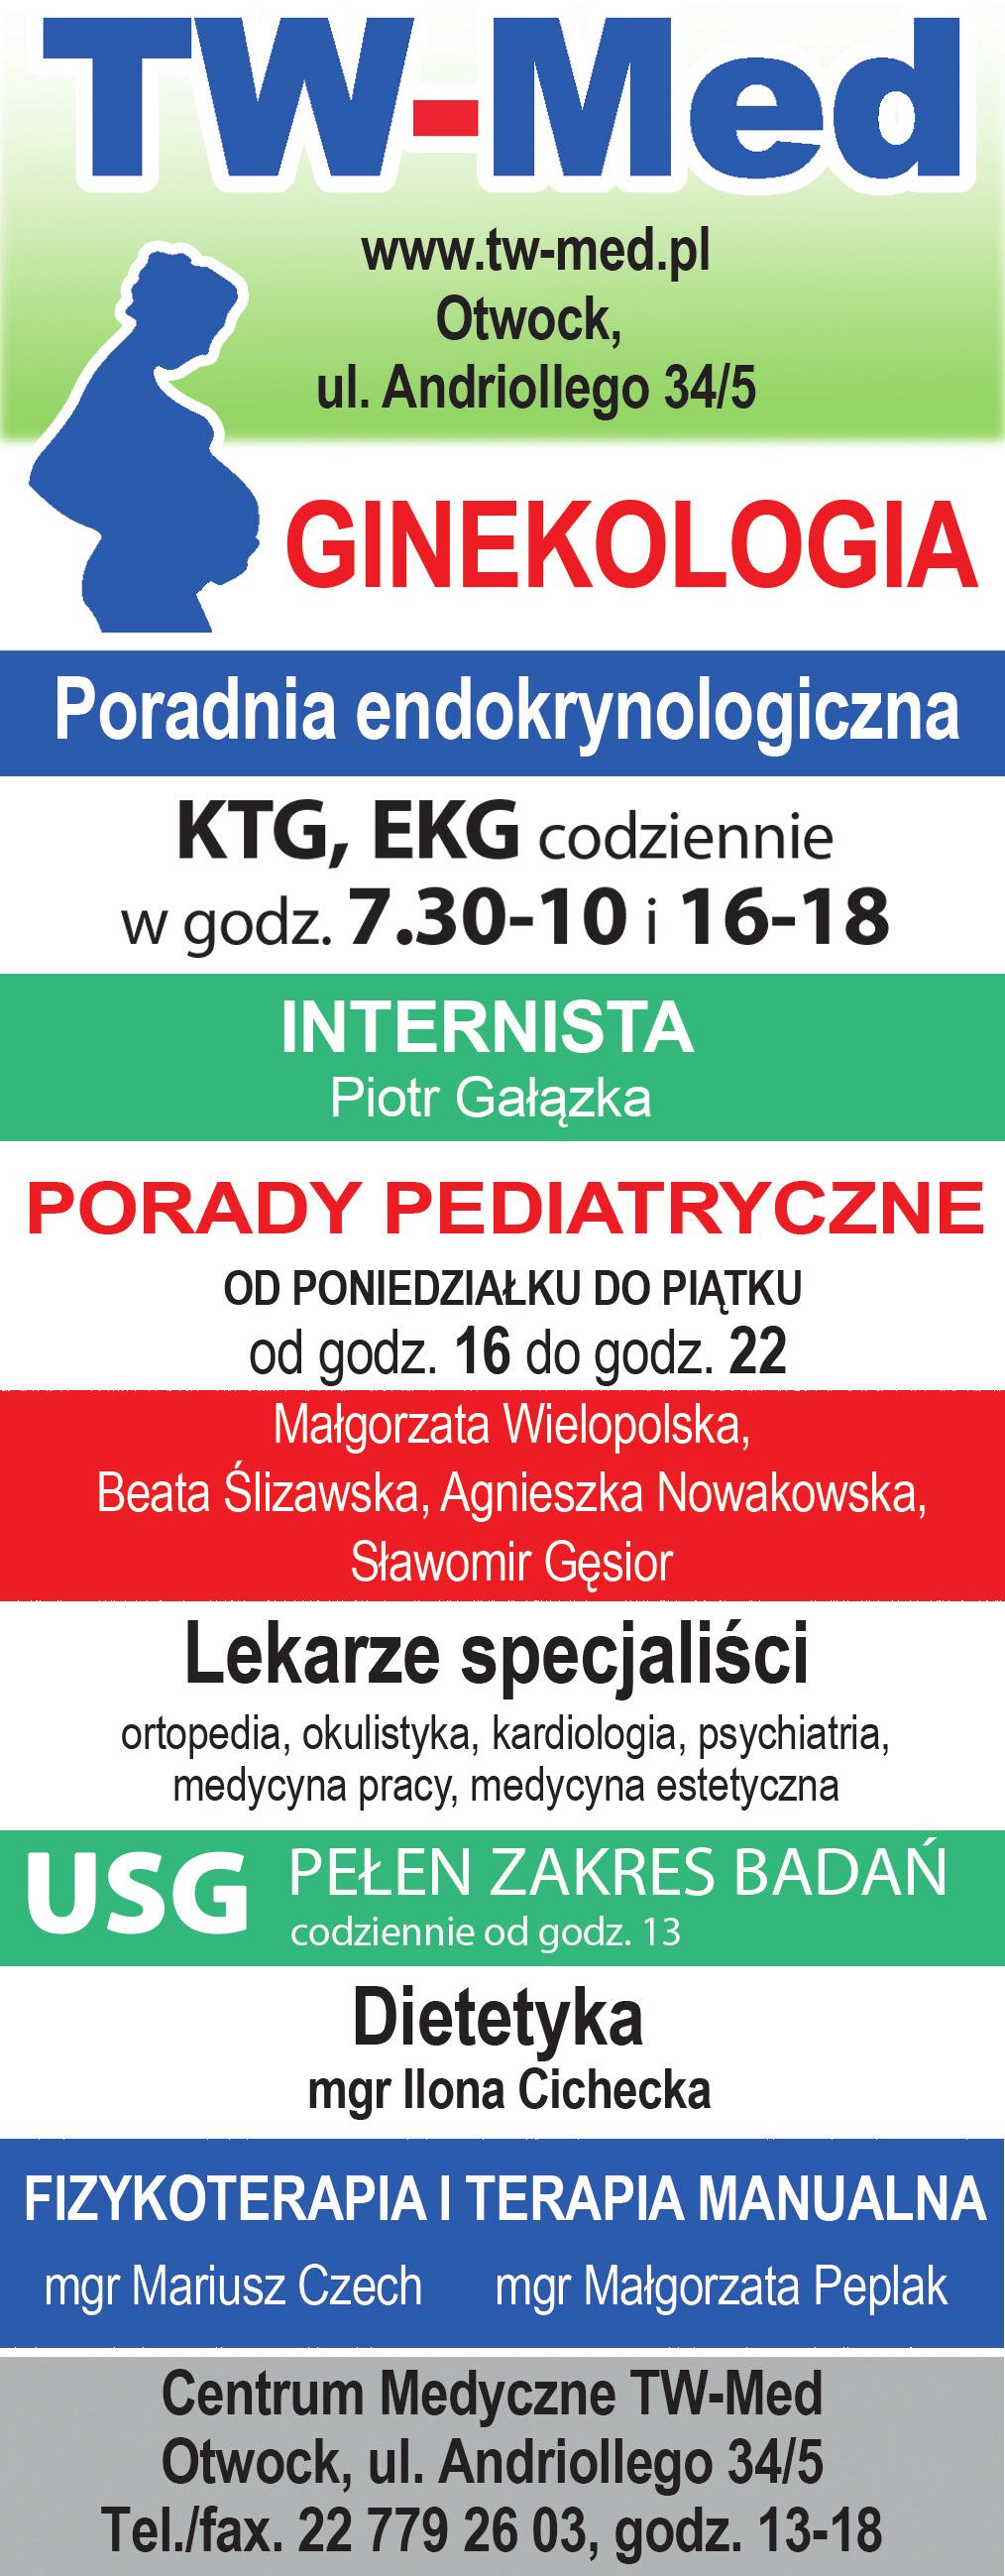 ogłoszenia drobne 41 linia otwocka 28 sierpnia 3 września 2017 GaBineT okulistyczny SPECJALISTYCZNE CENTRUM REHABILITACJI www.specer.pl lek. małgorzata gruchoła specjalista ii st. okulistyki lek.